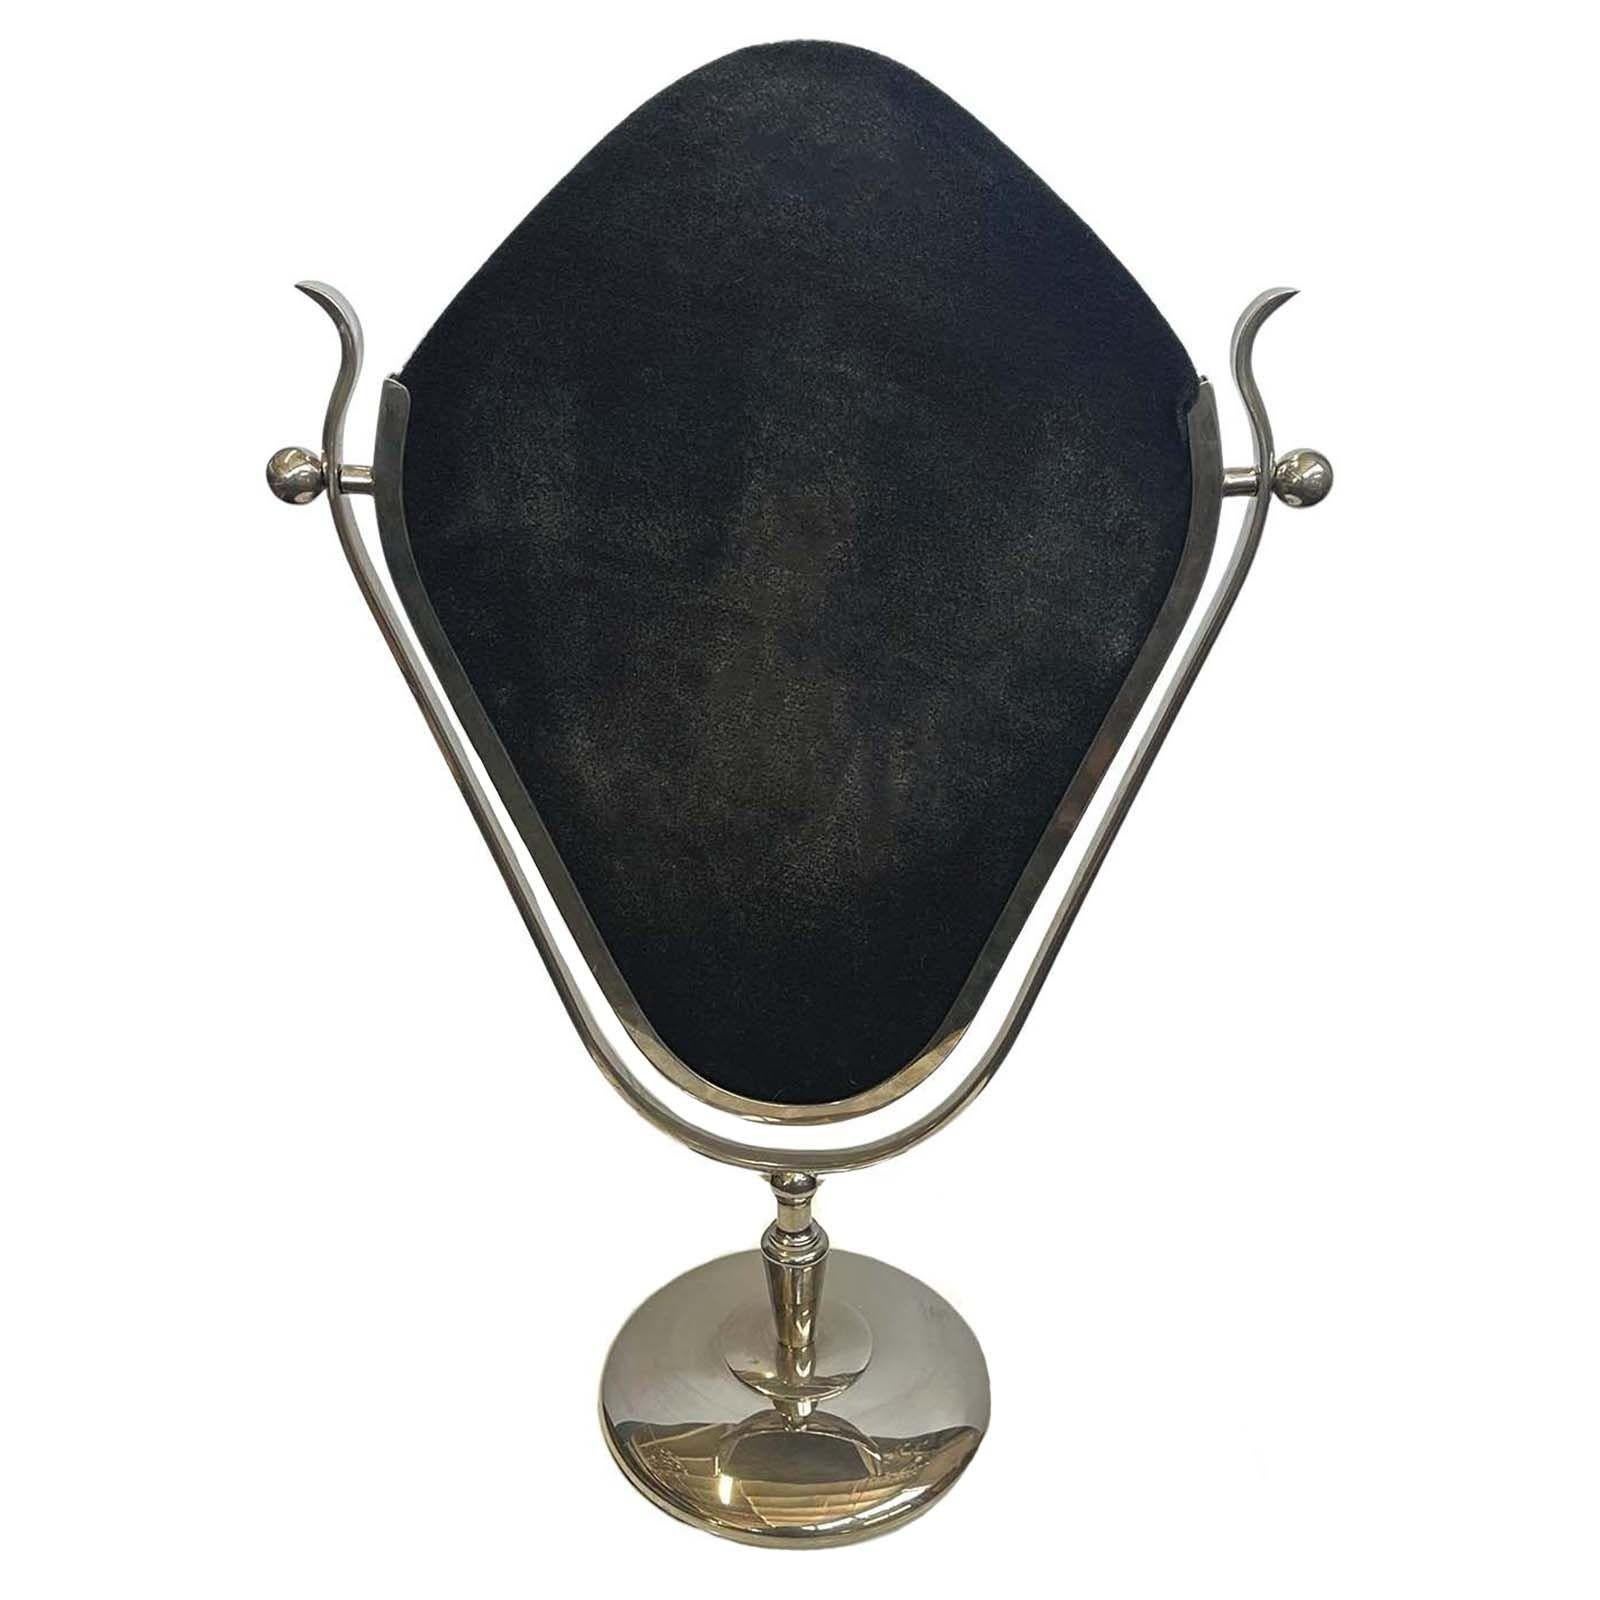 Ce superbe miroir de courtoisie créé par Charles Hollis Jones dans les années 1960 présente un cadre élégant méticuleusement fabriqué en métal nickelé, ajoutant une touche d'opulence et de sophistication à tout meuble de courtoisie ou salle